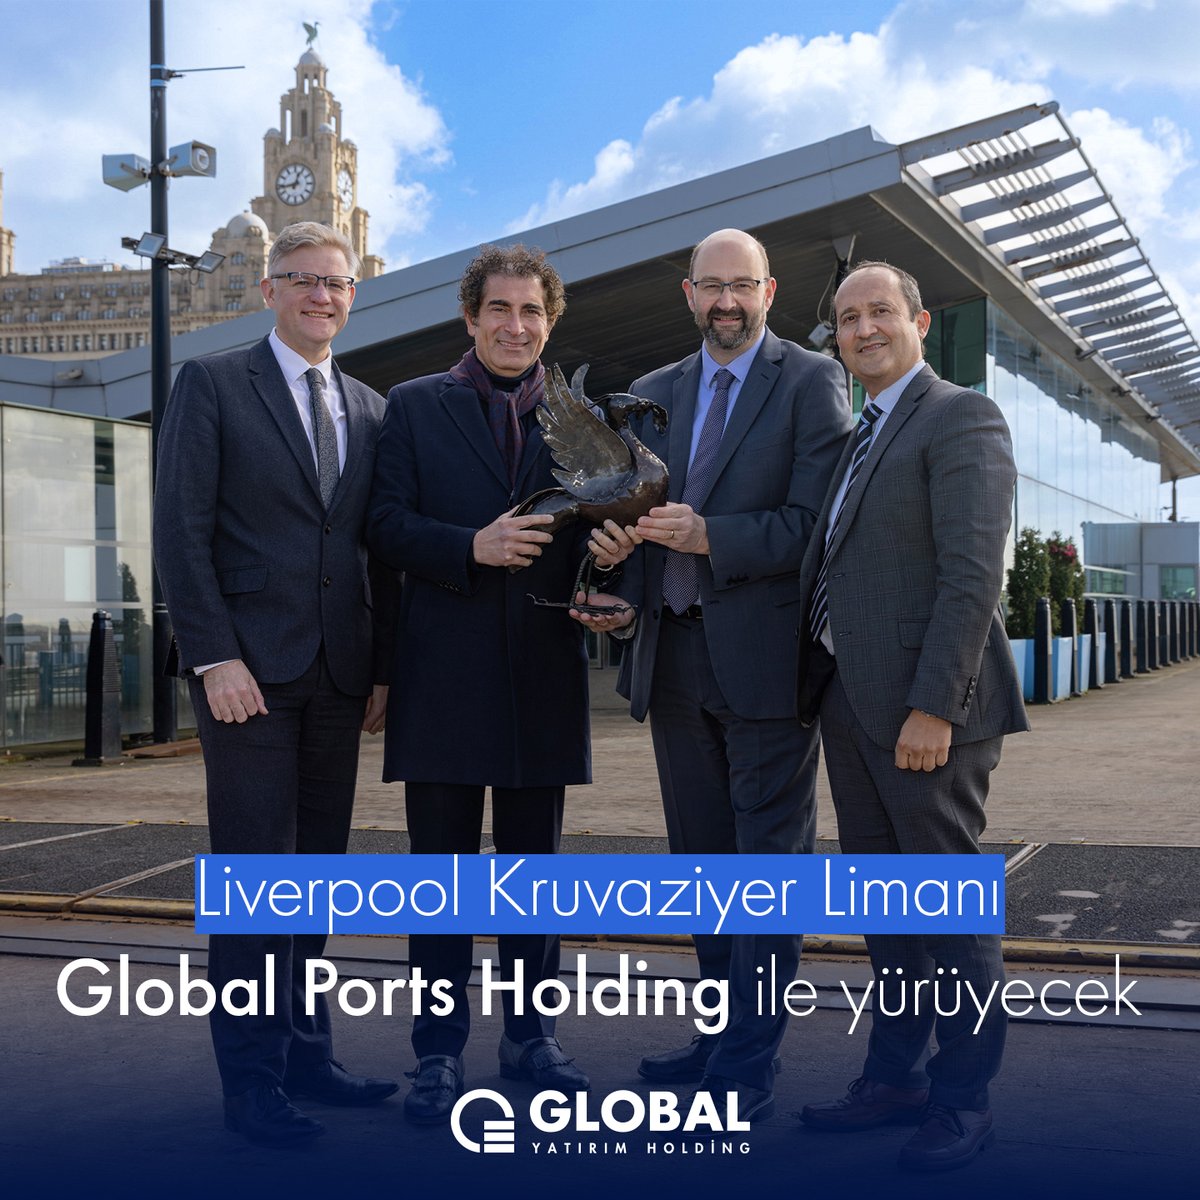 Global Yatırım Holding bağlı kuruluşu ve dünyanın en büyük kruvaziyer liman işletmecisi Global Ports Holding, Birleşik Krallık'ın en çok ziyaret edilen şehirlerinden biri olan Liverpool'un kruvaziyer limanını portföyüne katıyor. Detaylı bilgi için: kap.org.tr/tr/Bildirim/12…